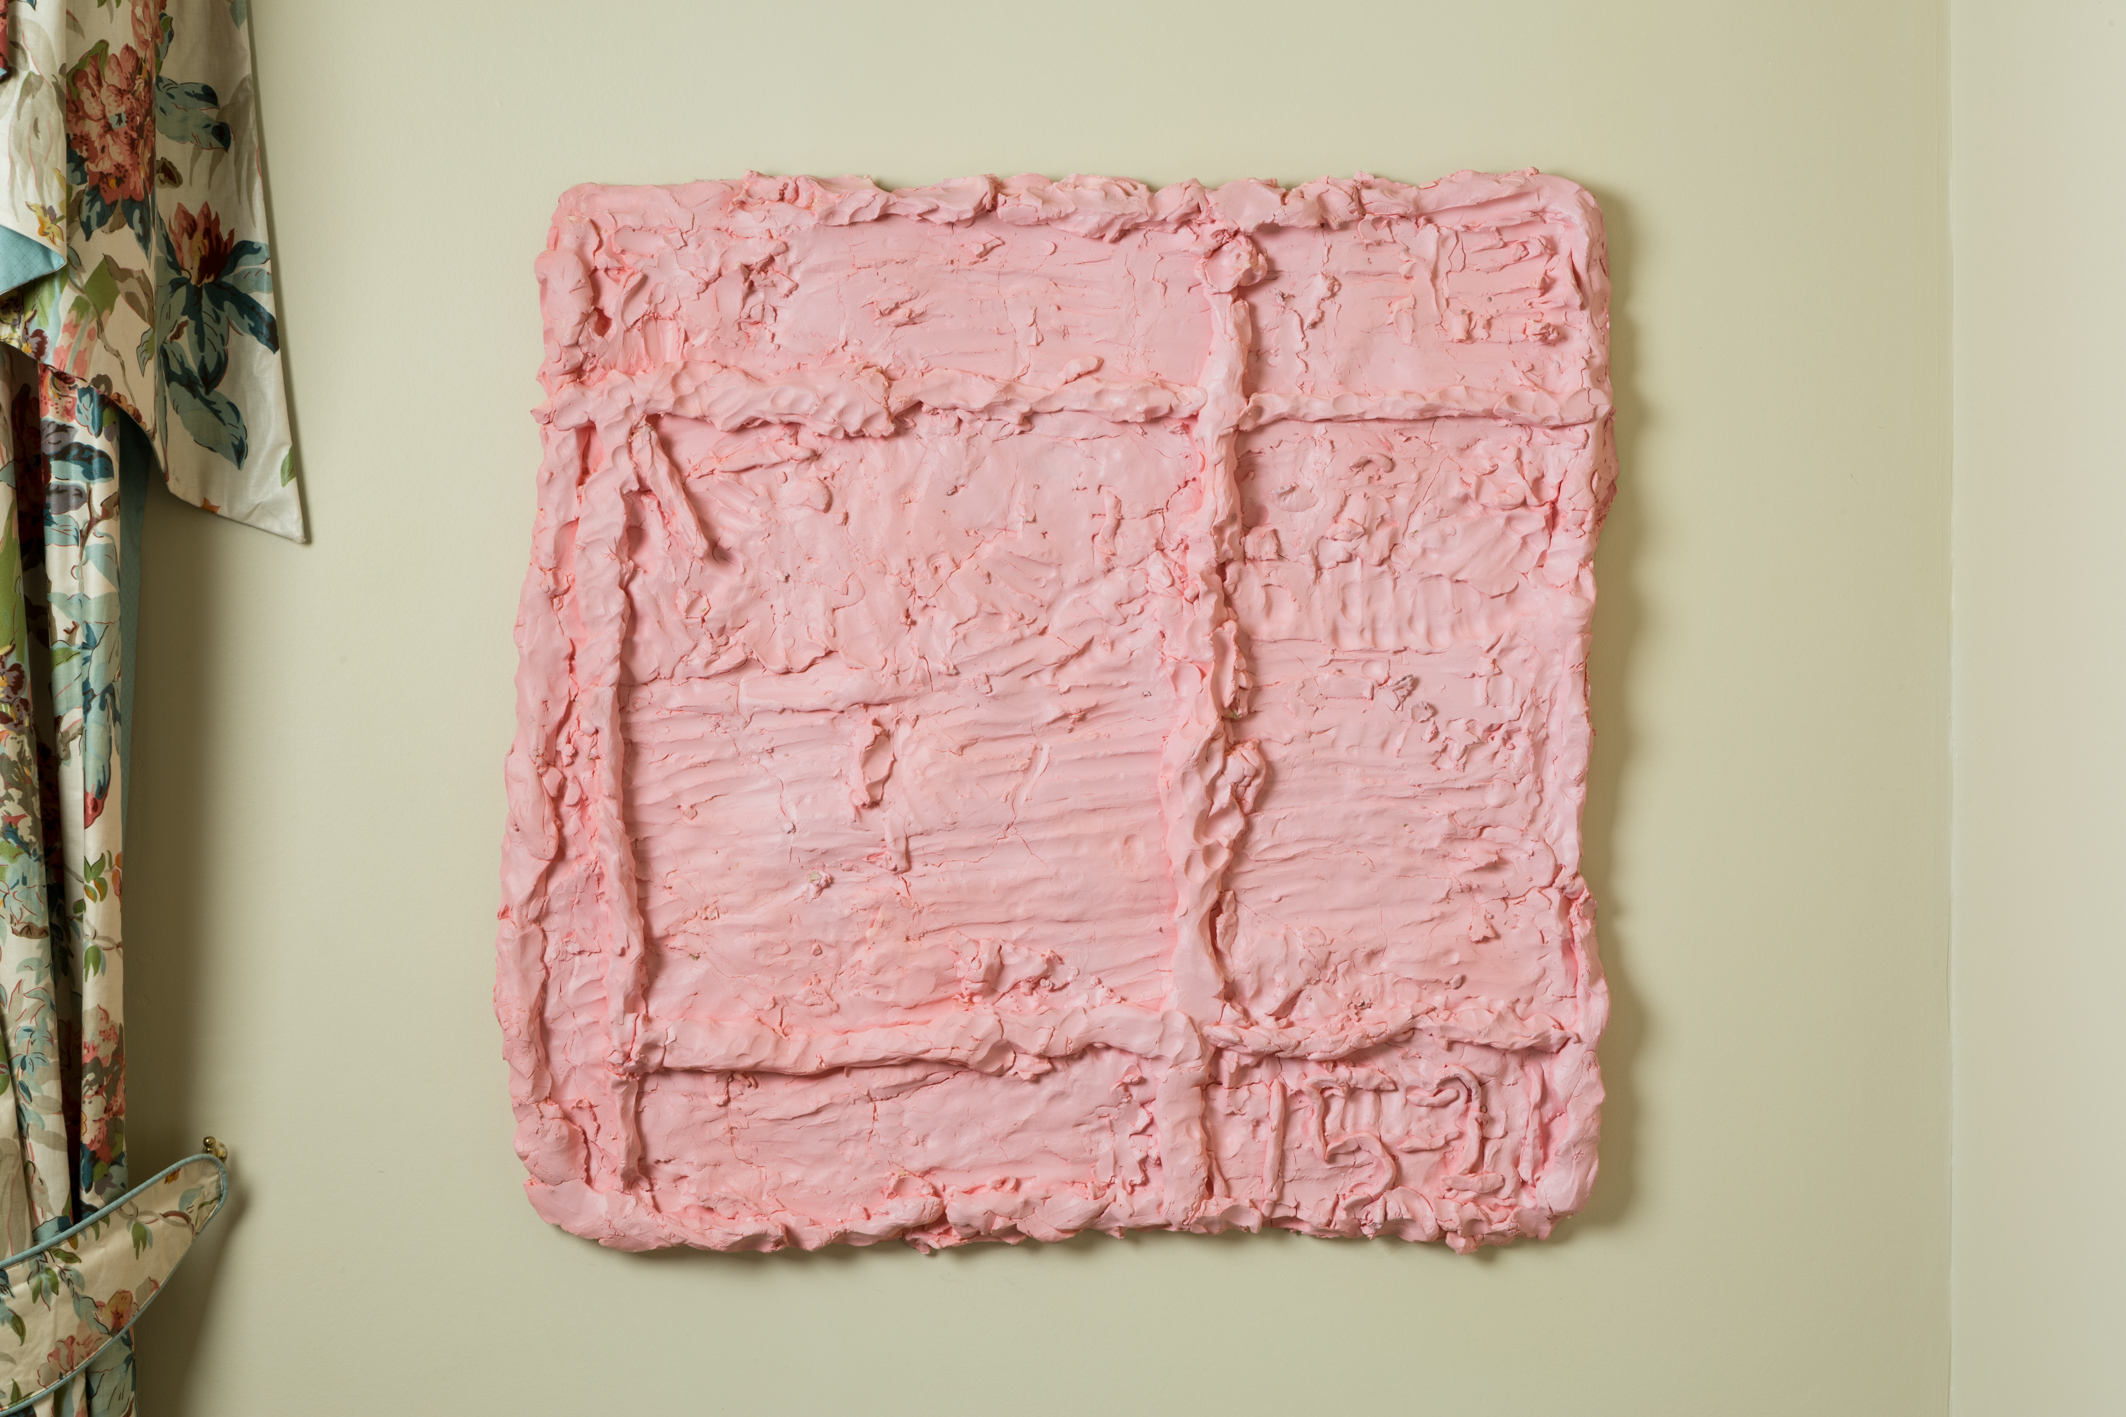 Dan Arps, “Grid Study (grapefruit)”, 2016, polyurethane, paint, 80 × 80 cm